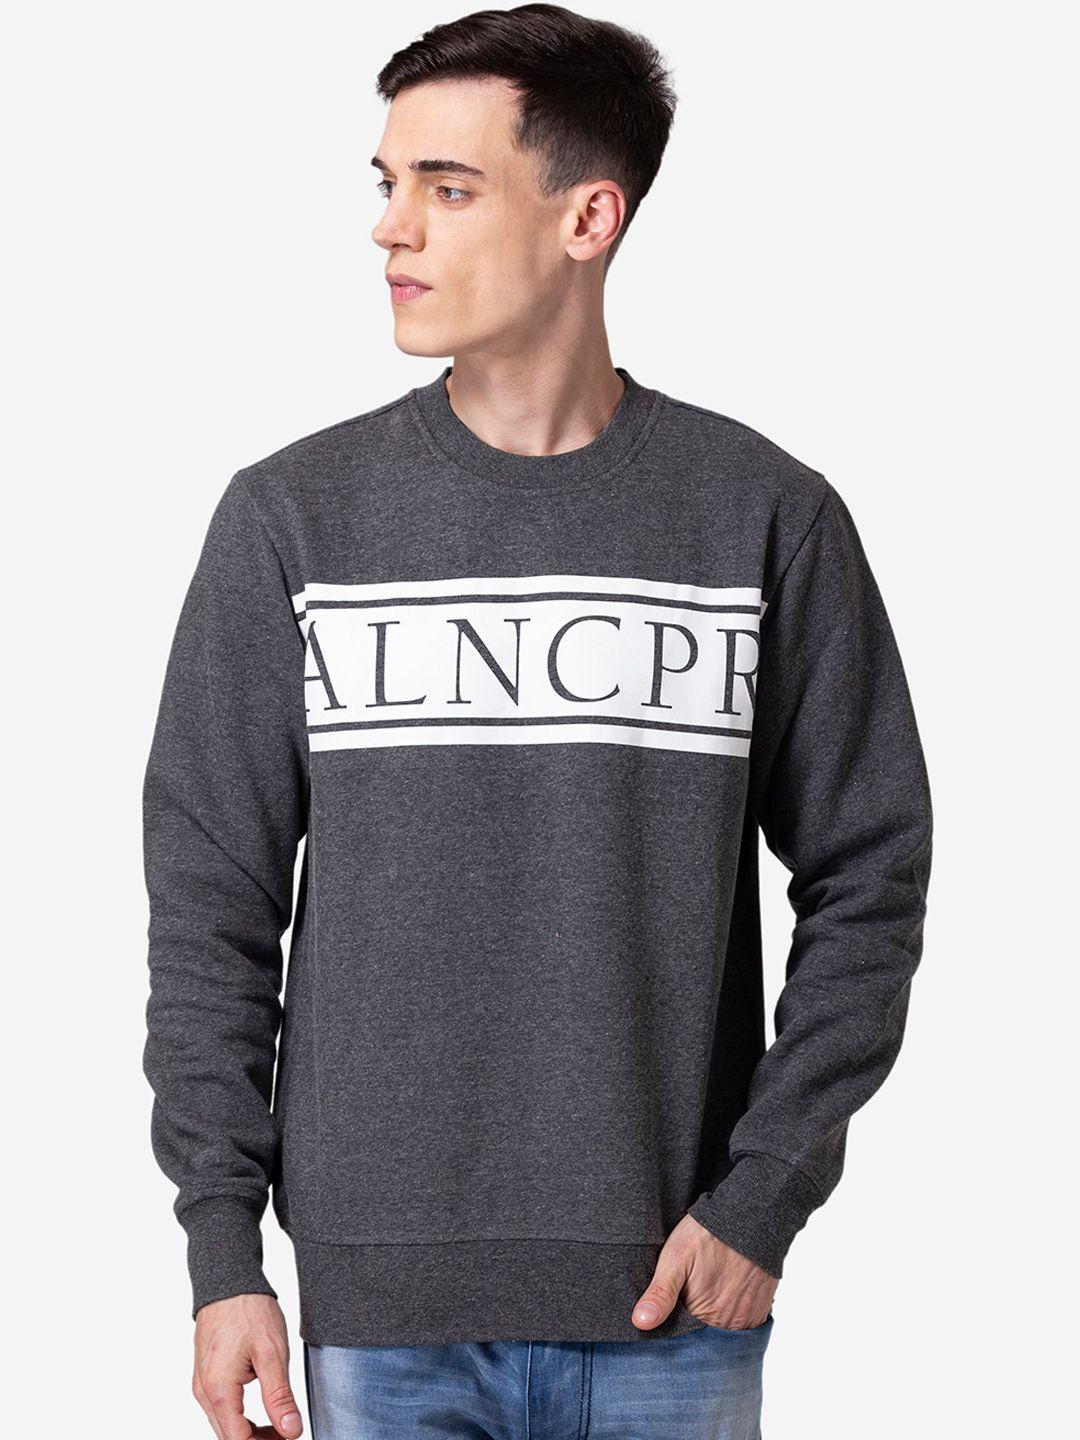 allen-cooper-men-grey-printed-sweatshirt